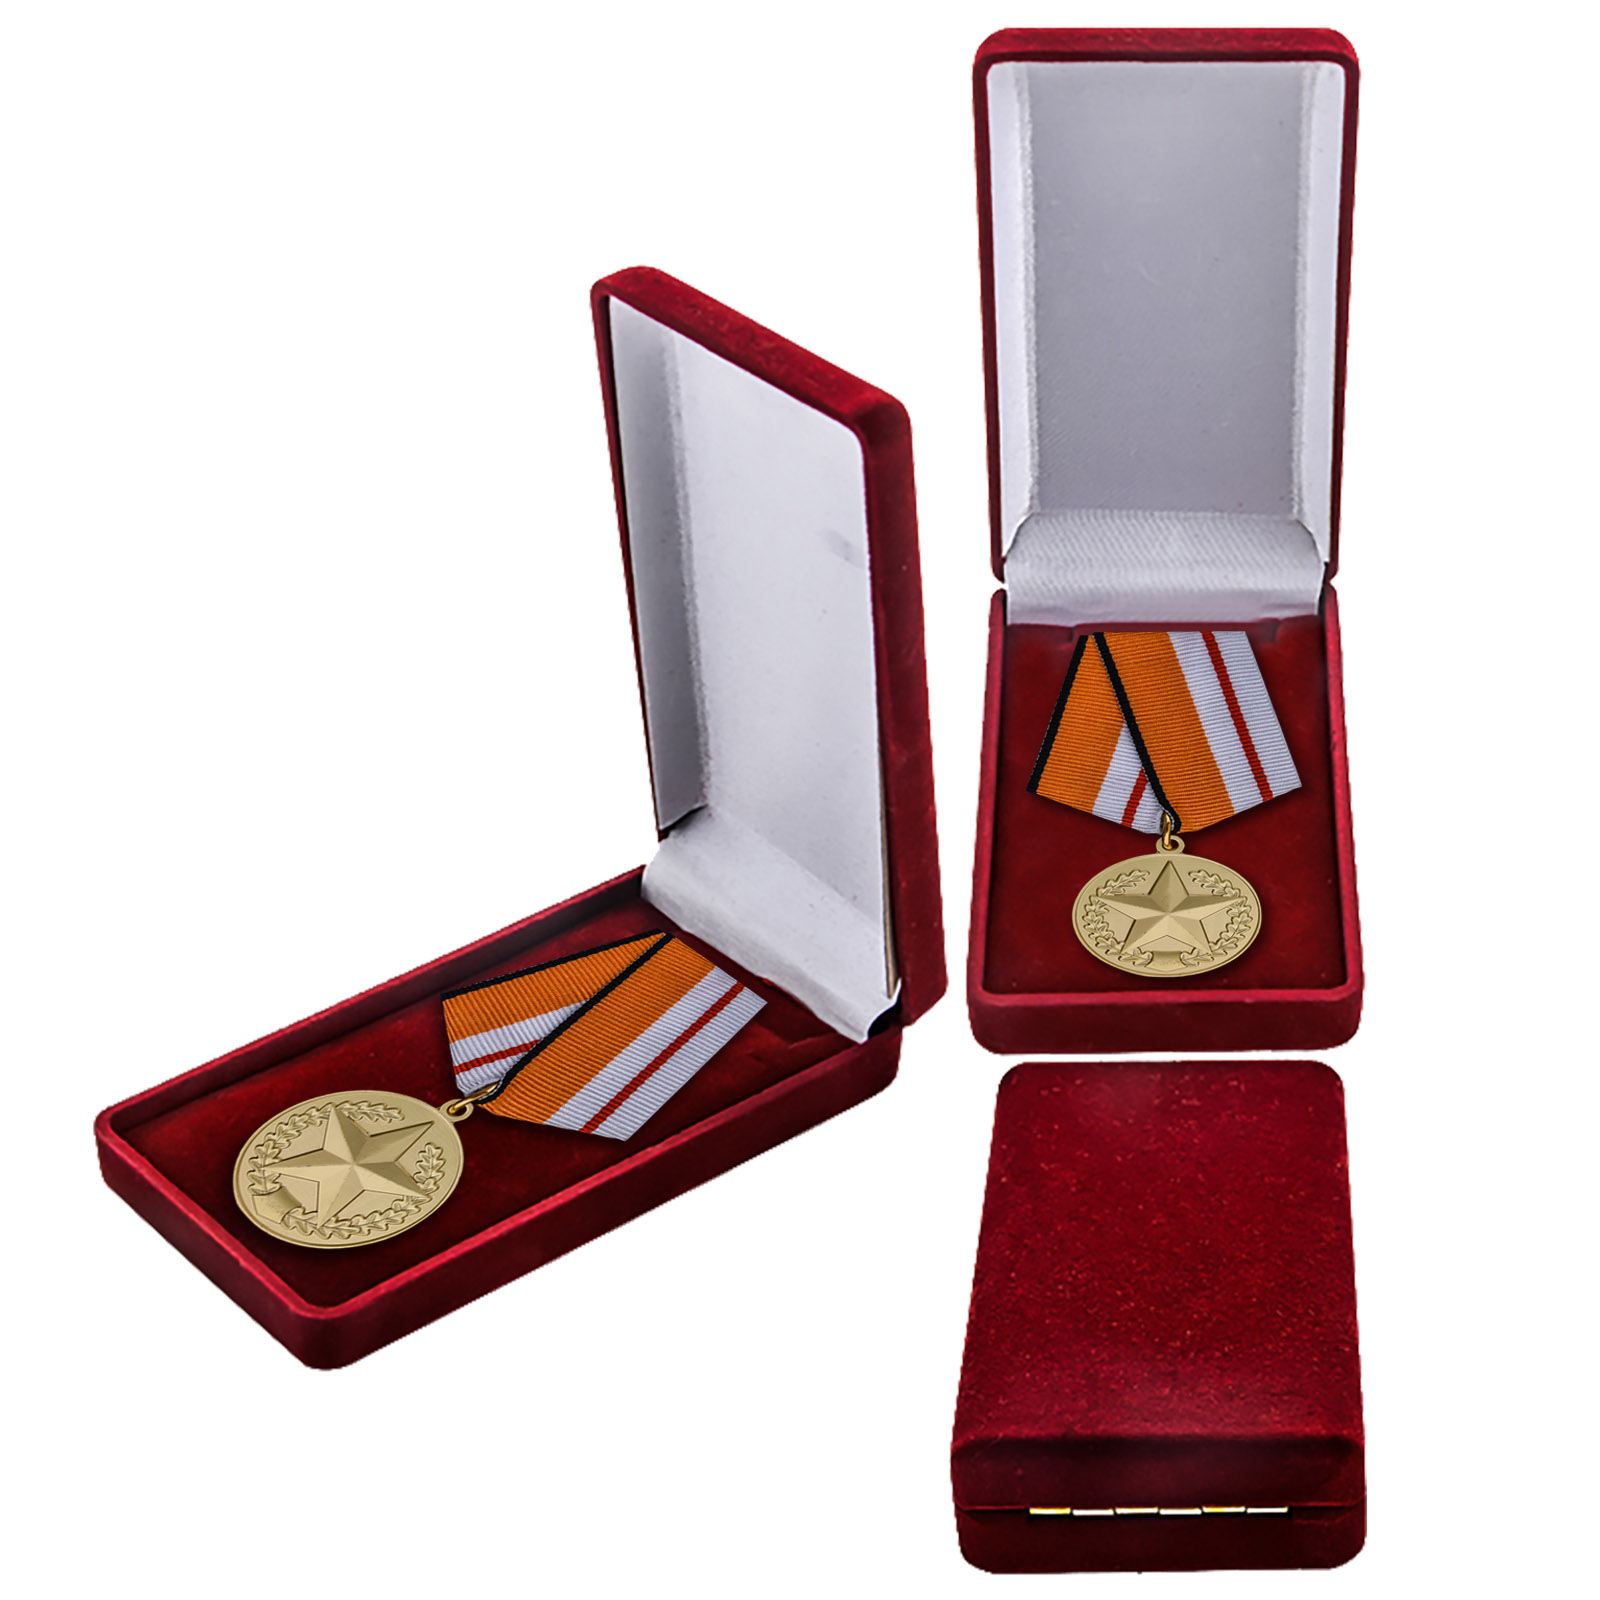 Медаль "За отличие в соревнованиях" 1 степени МО РФ в футляре